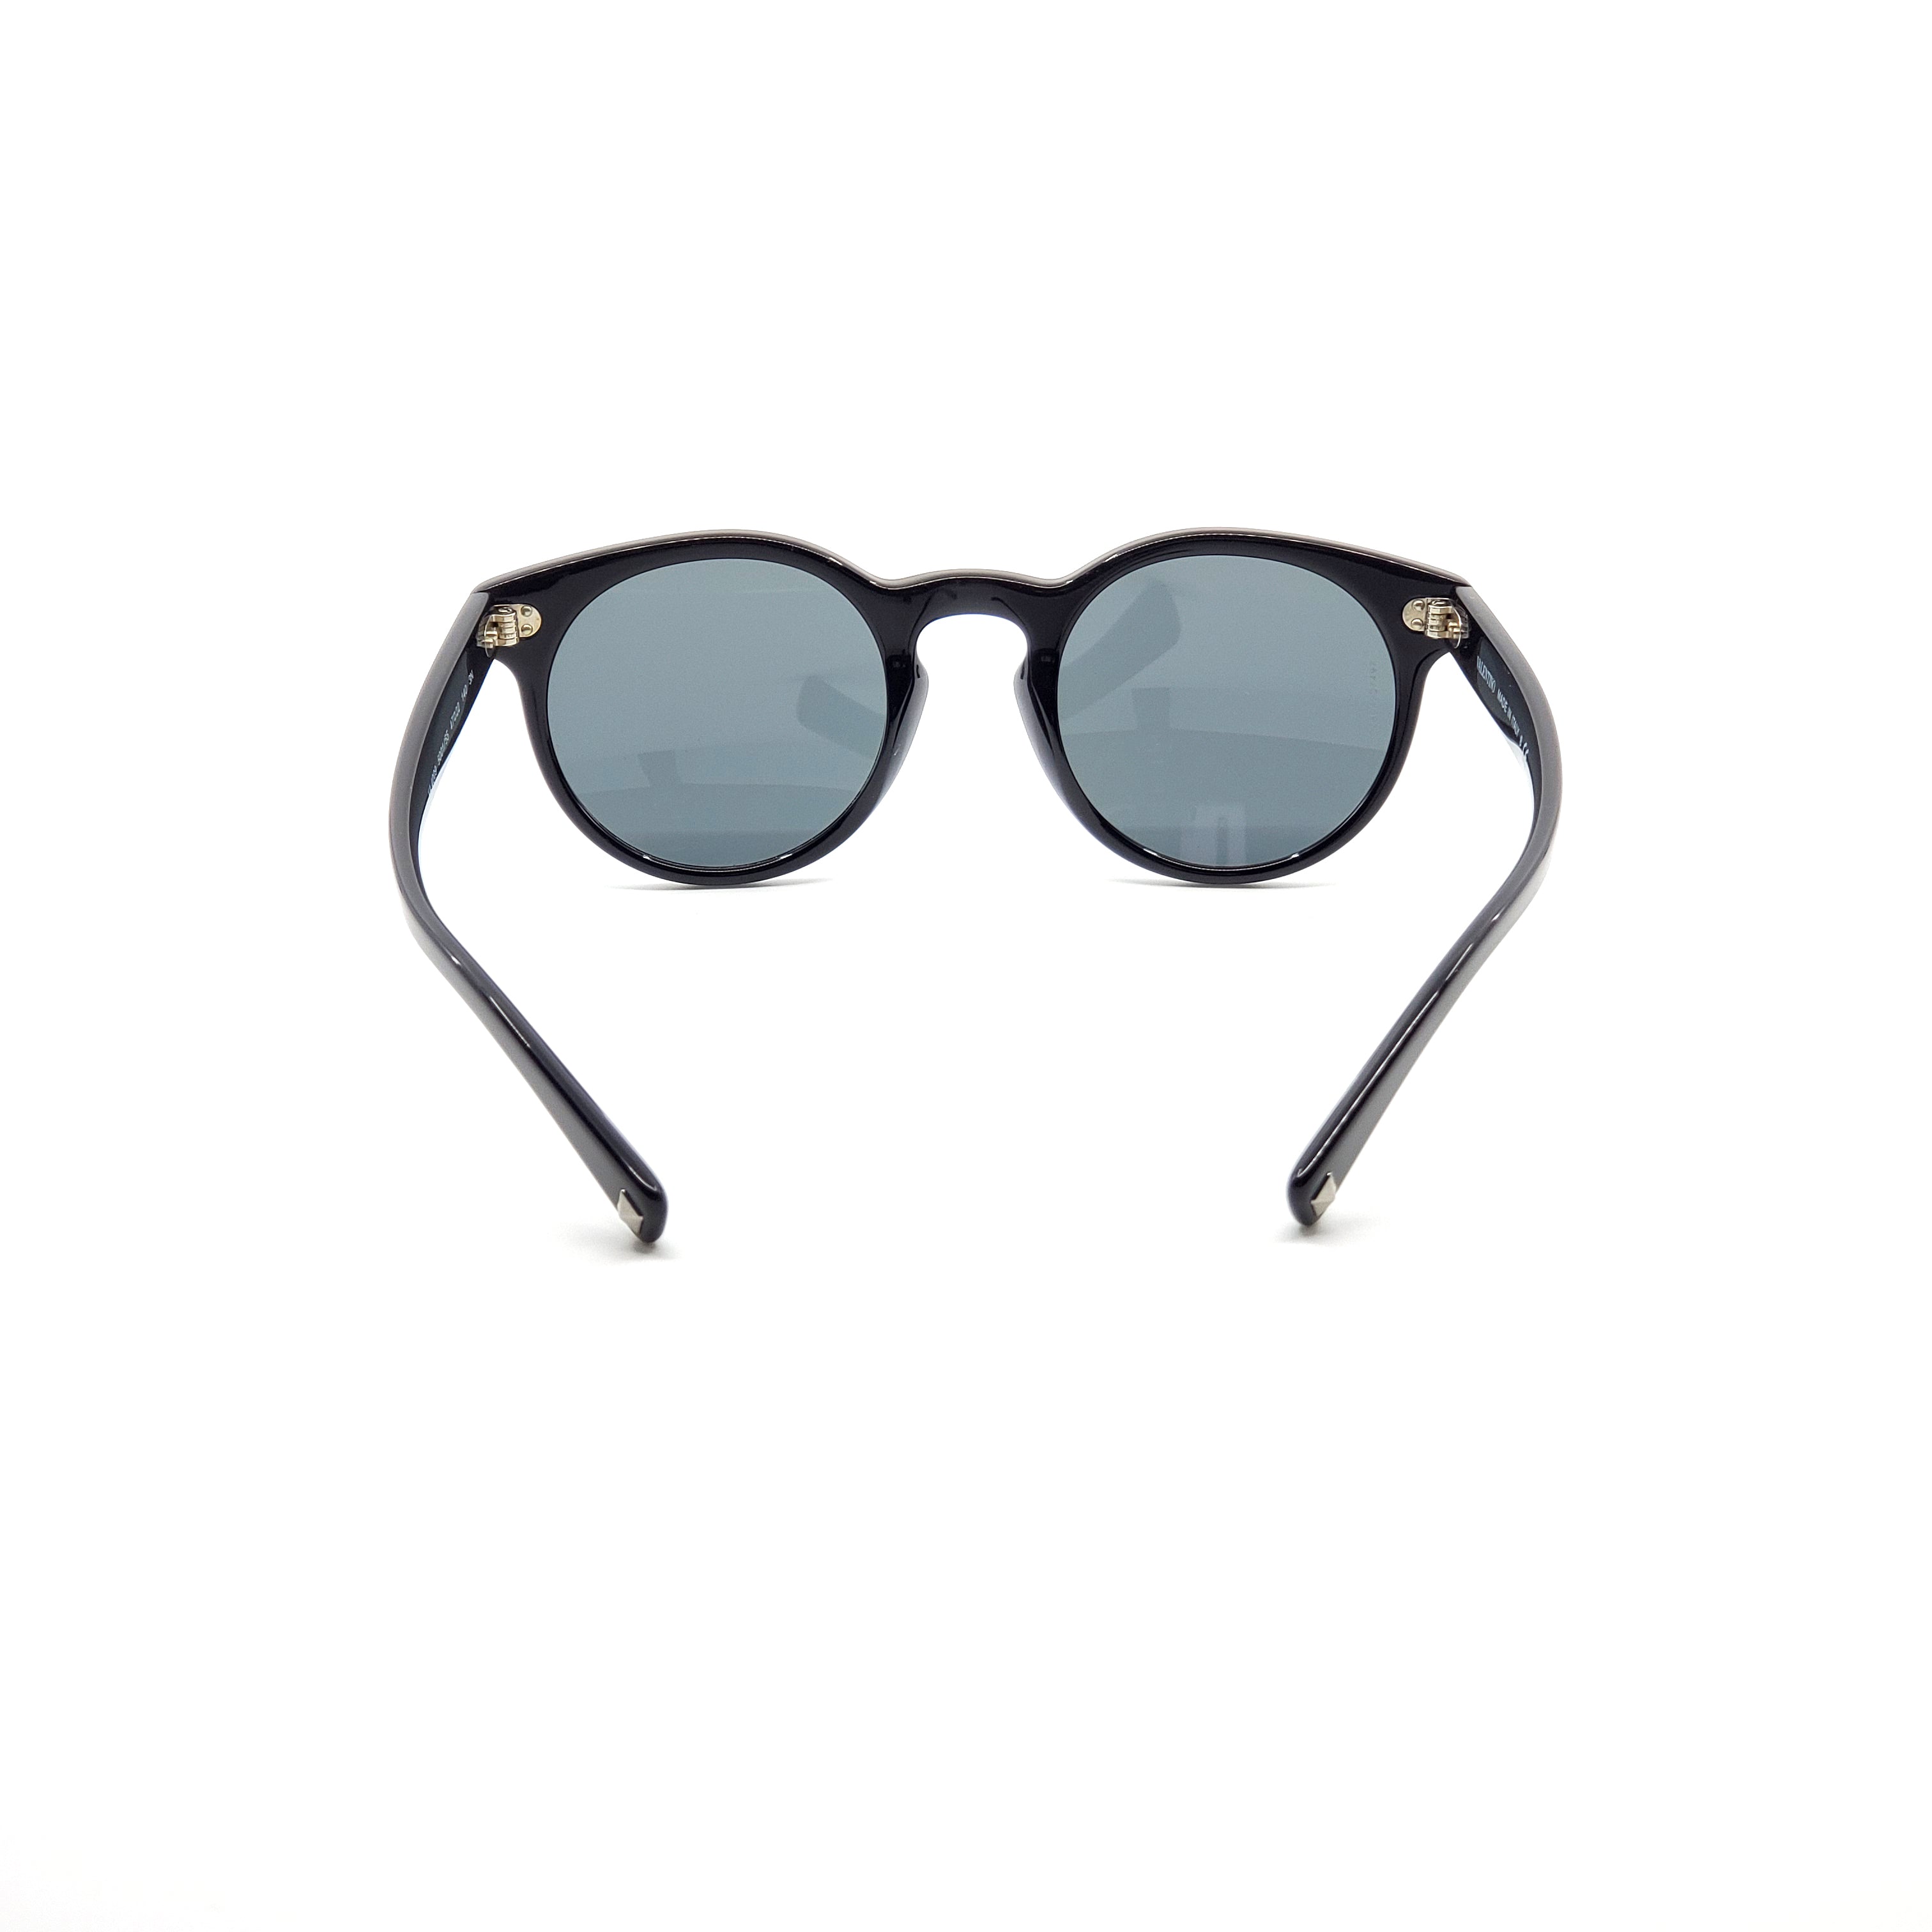 Valentino Sunglasses - OVA4009-500155